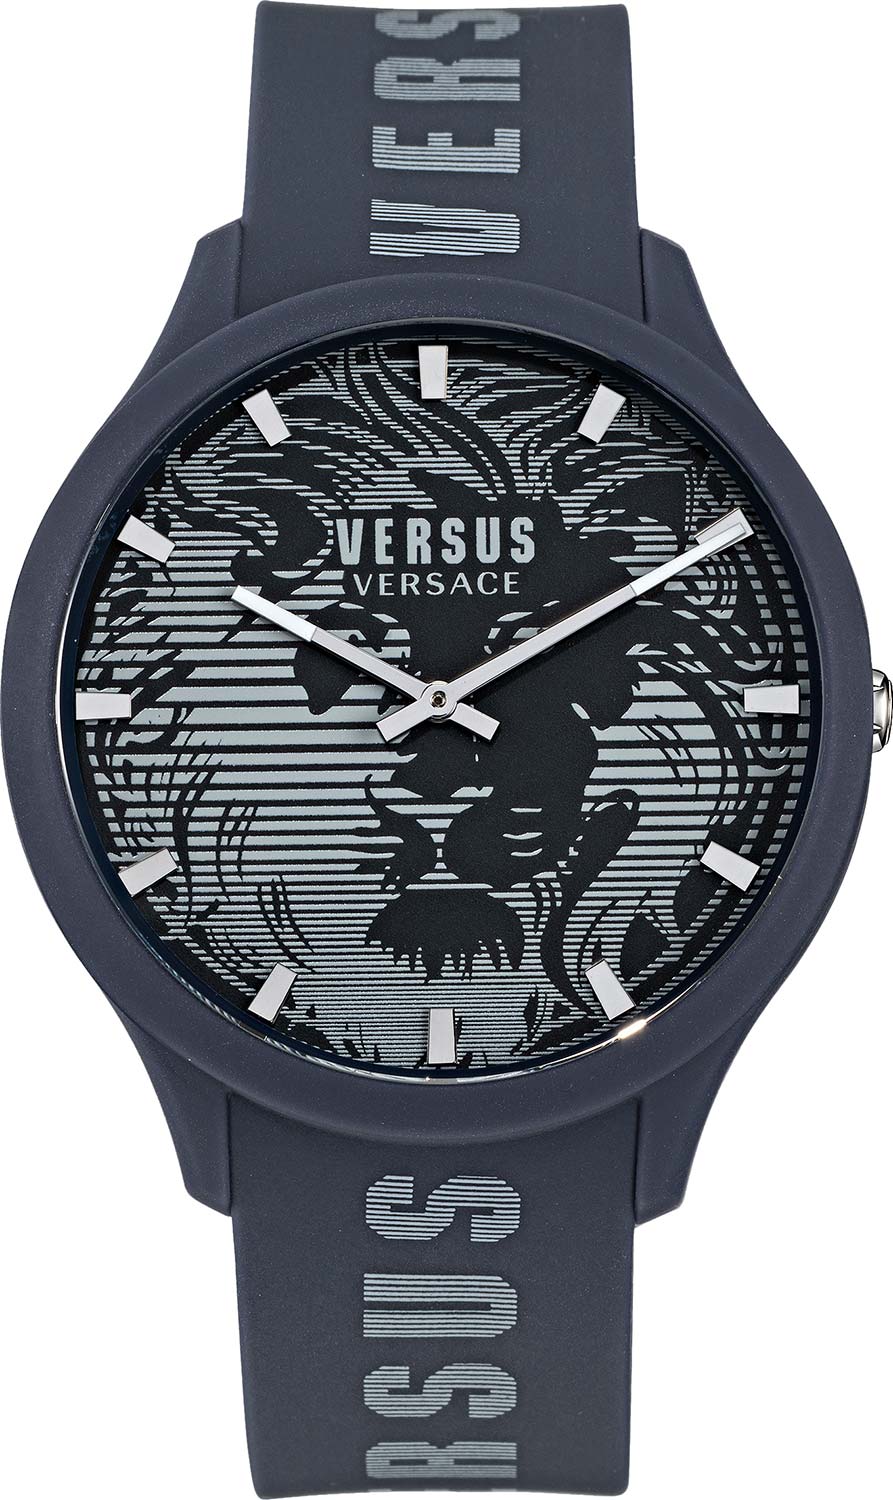 Наручные часы мужские Versus Versace VSP1O0221 синие